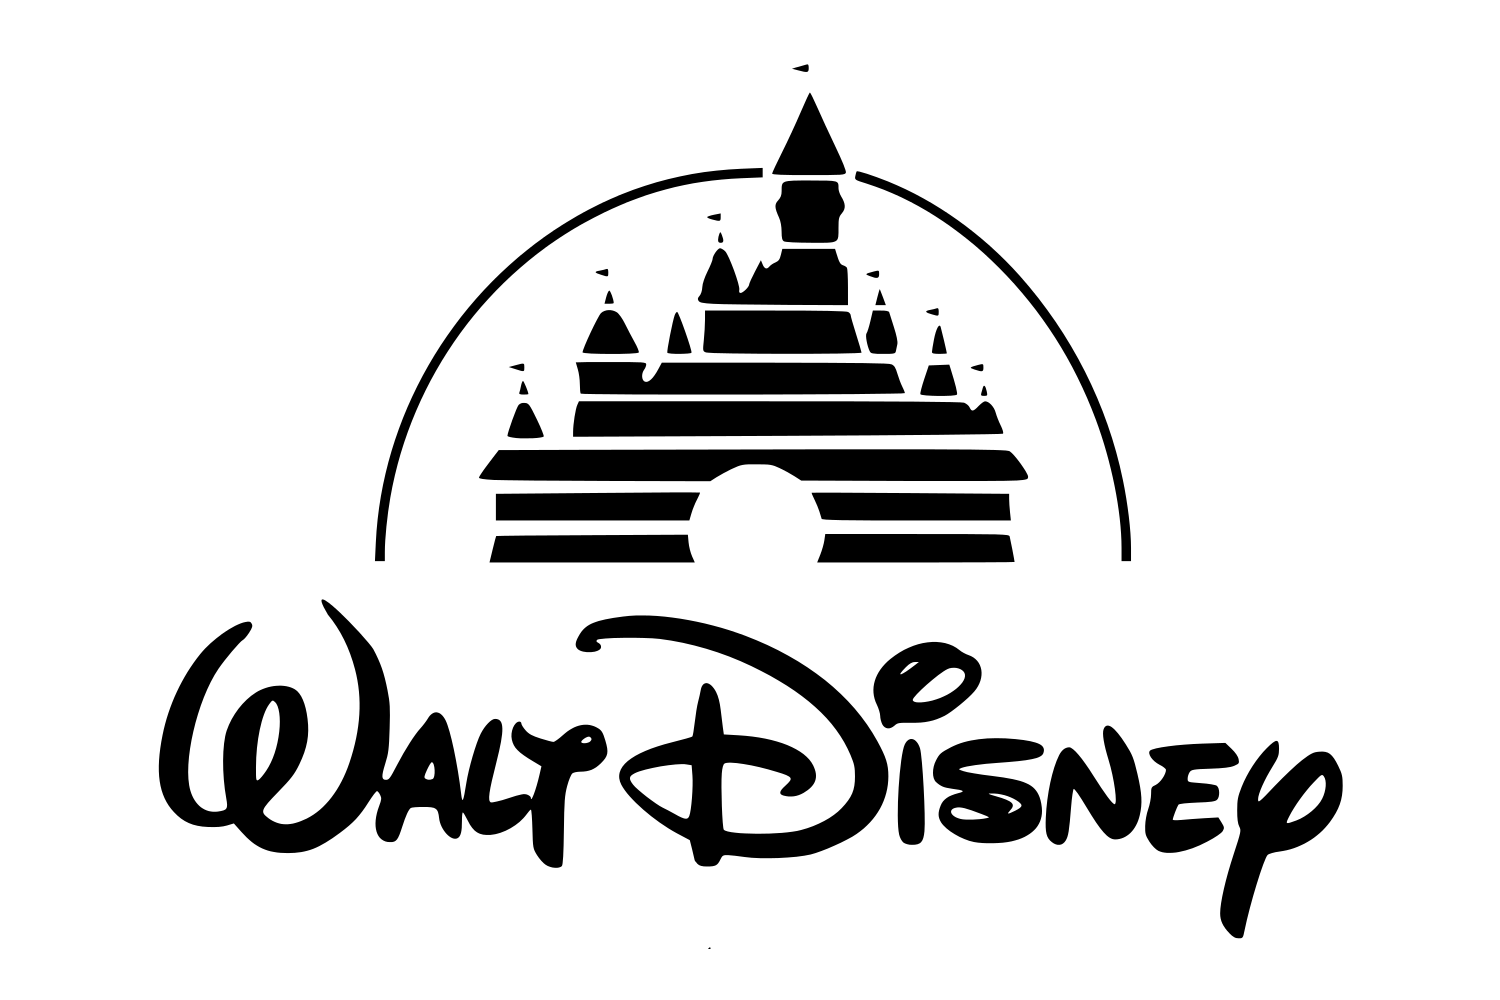 والت ديزني logo صورة PNG مجانية